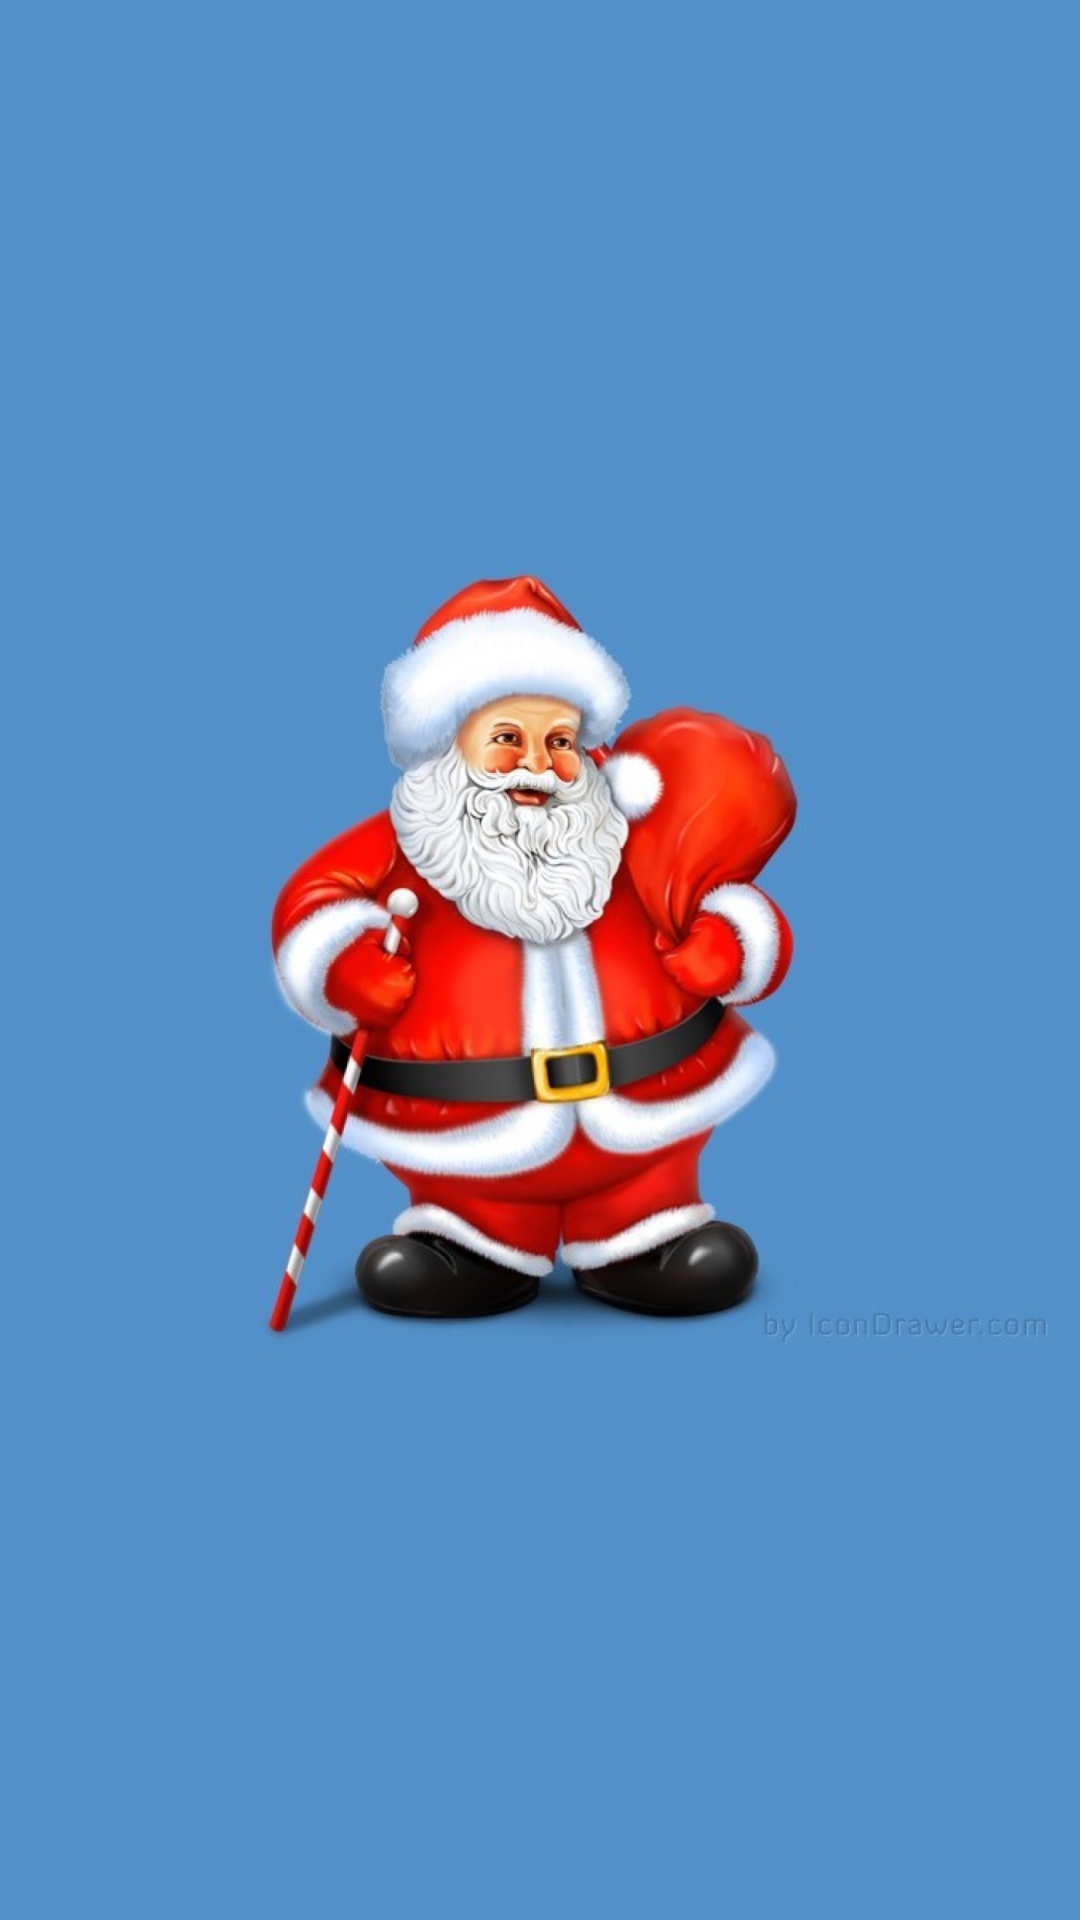 Santa Claus Illustration wallpaper 1080x1920